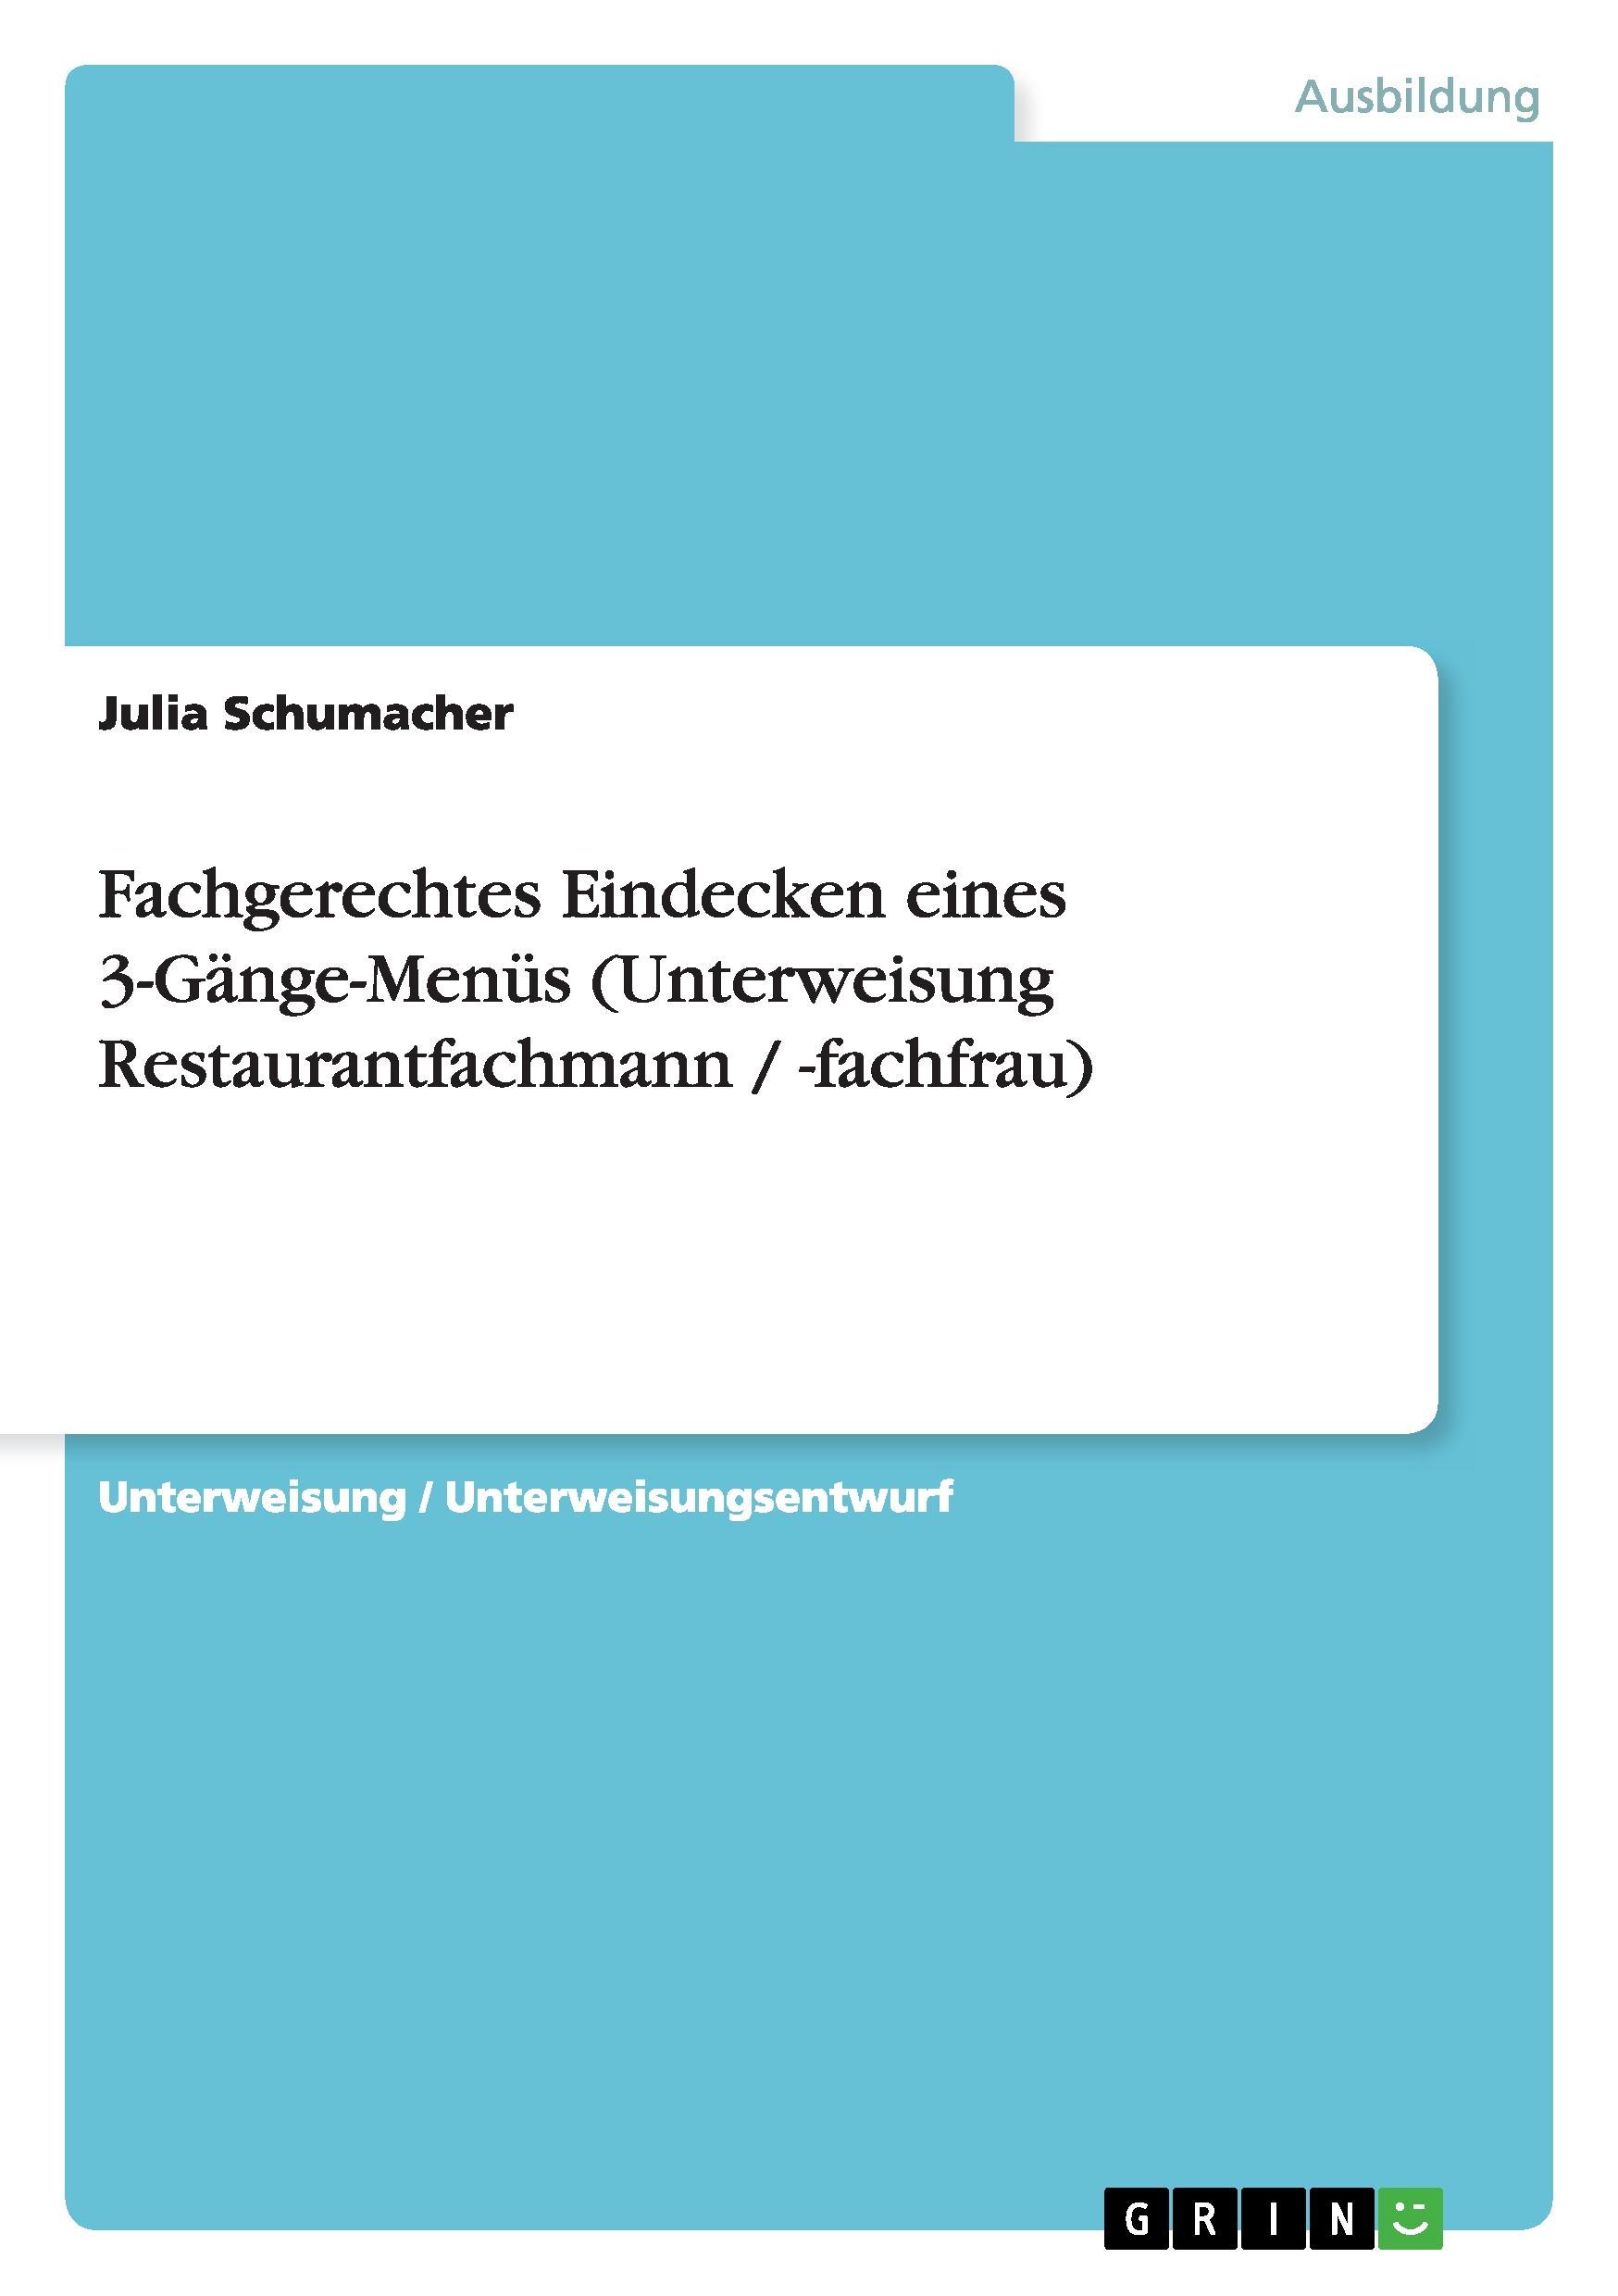 Fachgerechtes Eindecken eines 3-Gaenge-Menues (Unterweisung Restaurantfachmann / -fachfrau) - Schumacher, Julia